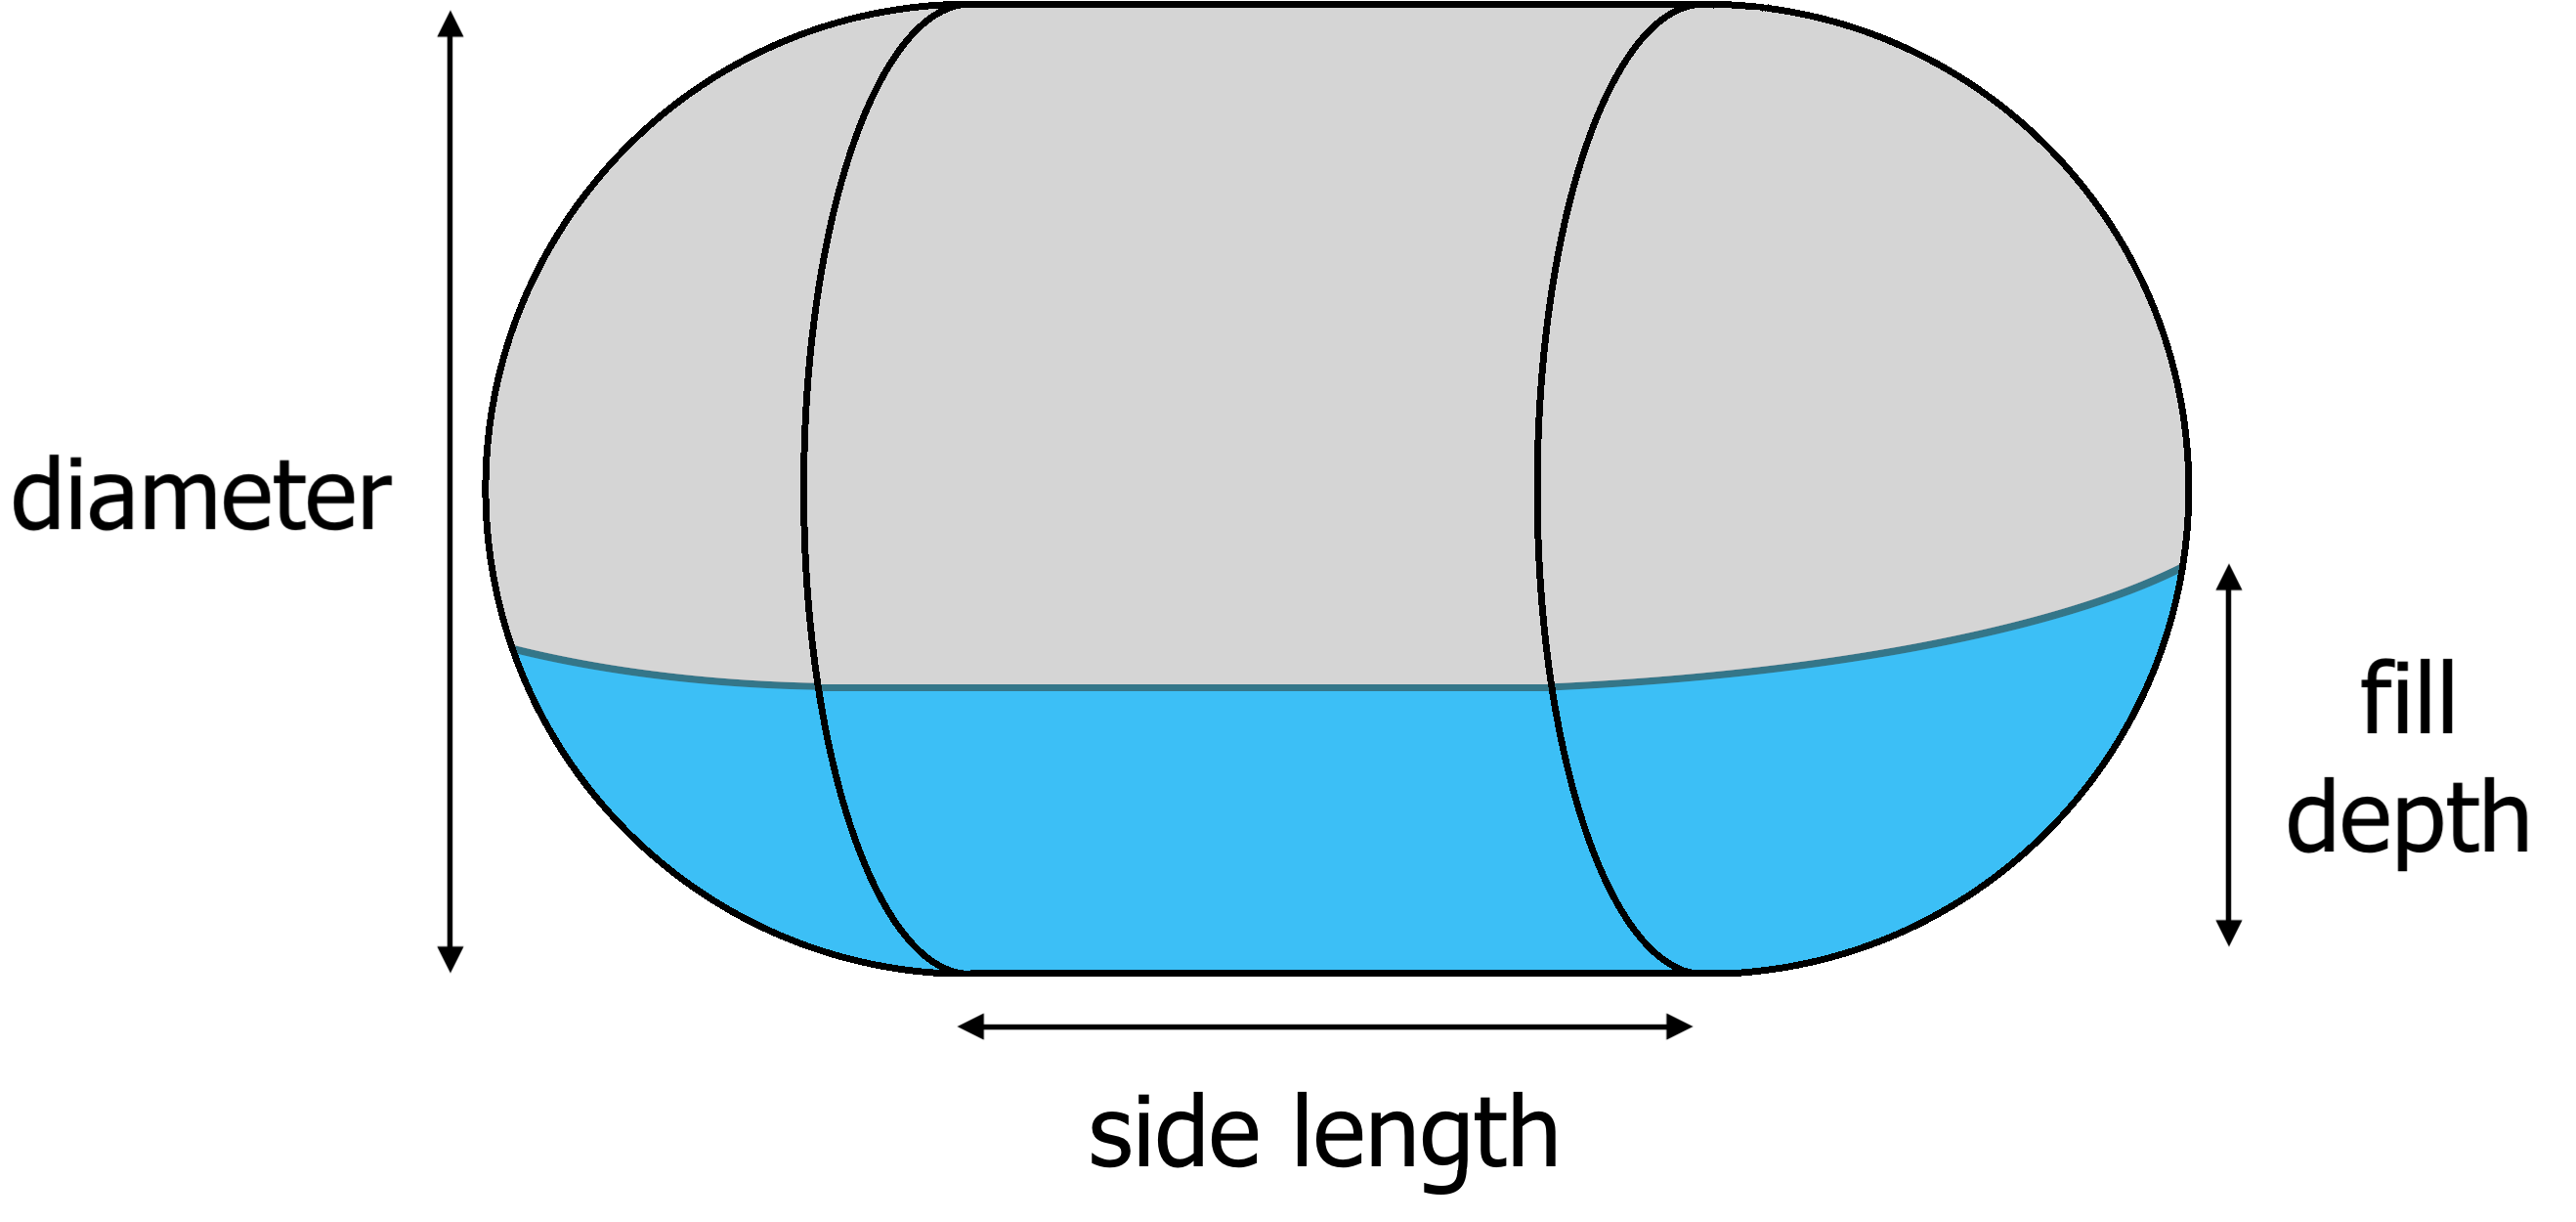 horizontal capsule tank diagram showing side length, diameter, and fill depth dimensions